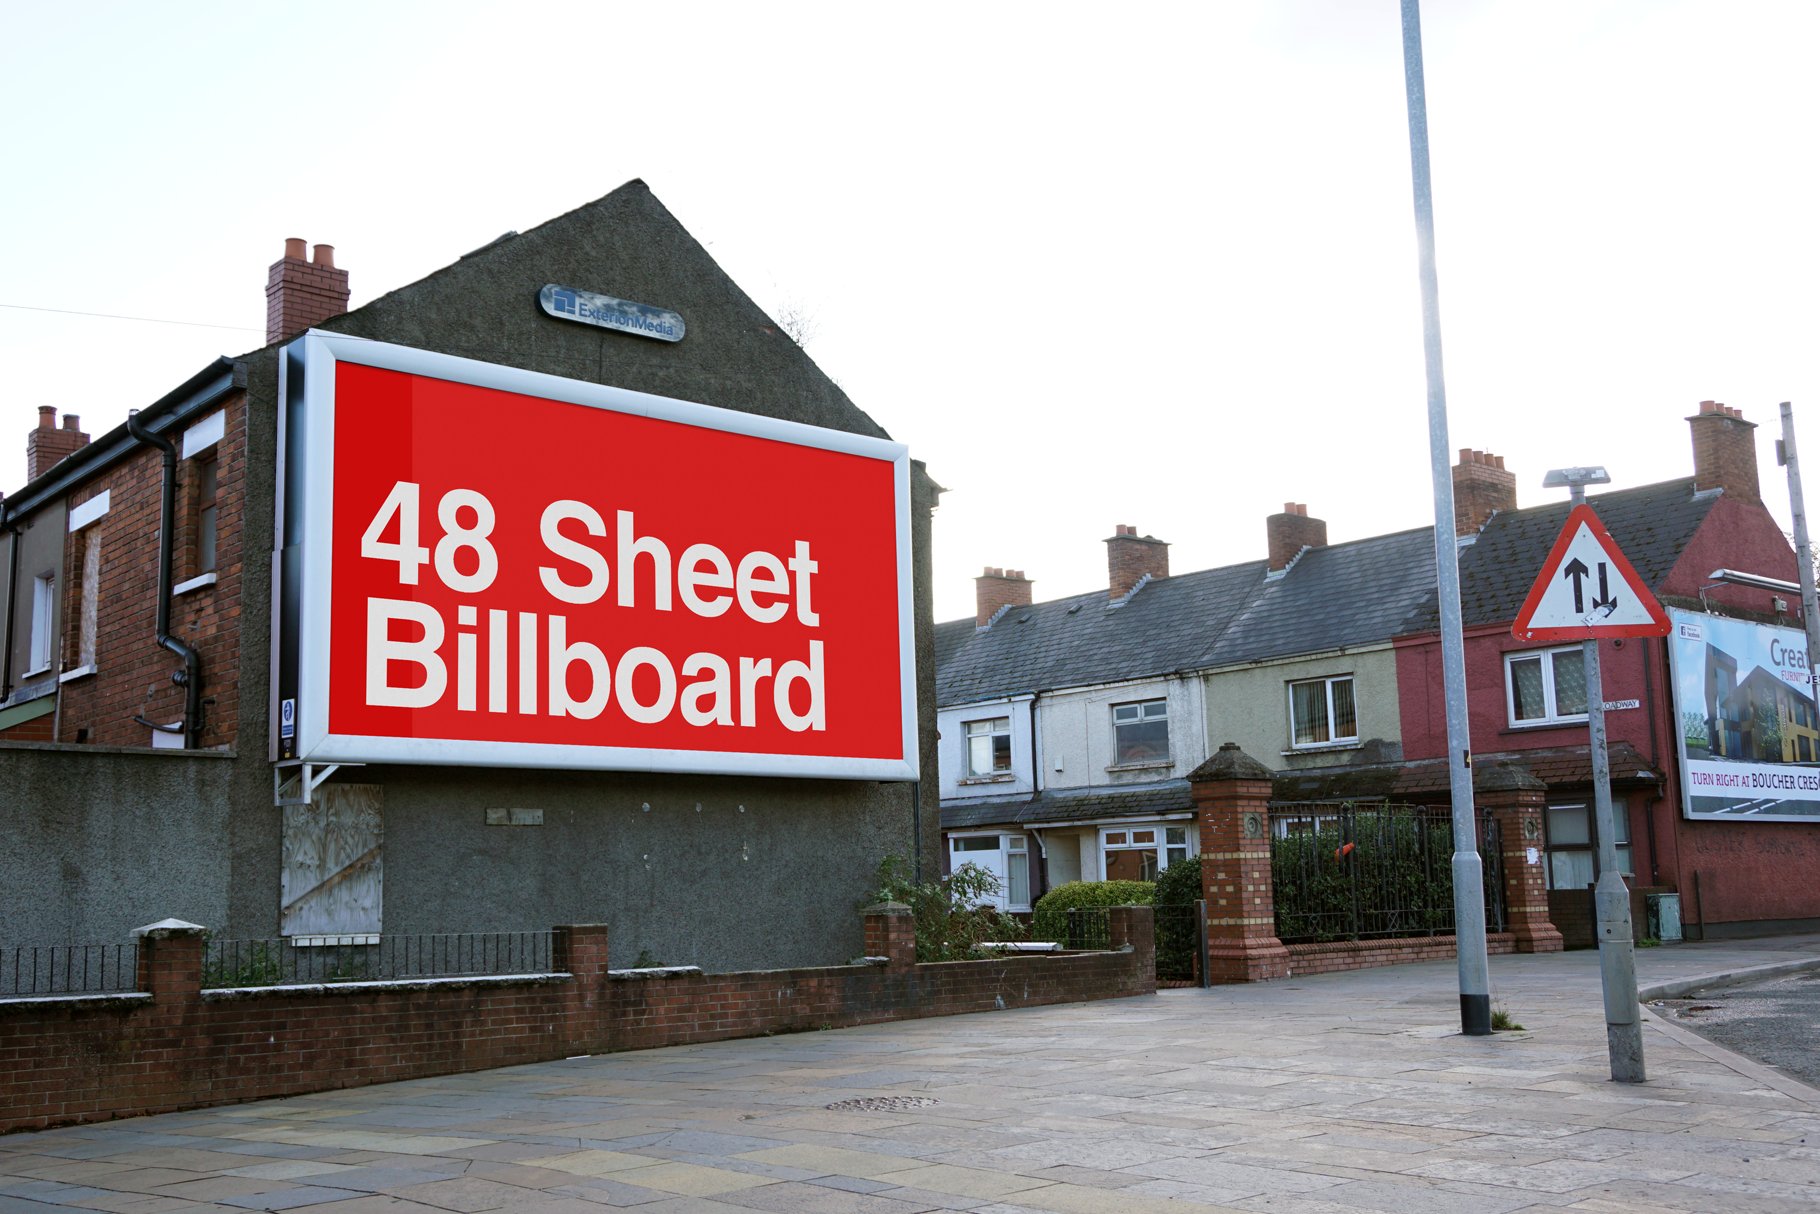 48 Sheet Billboard Mock Up - Belfast cover image.